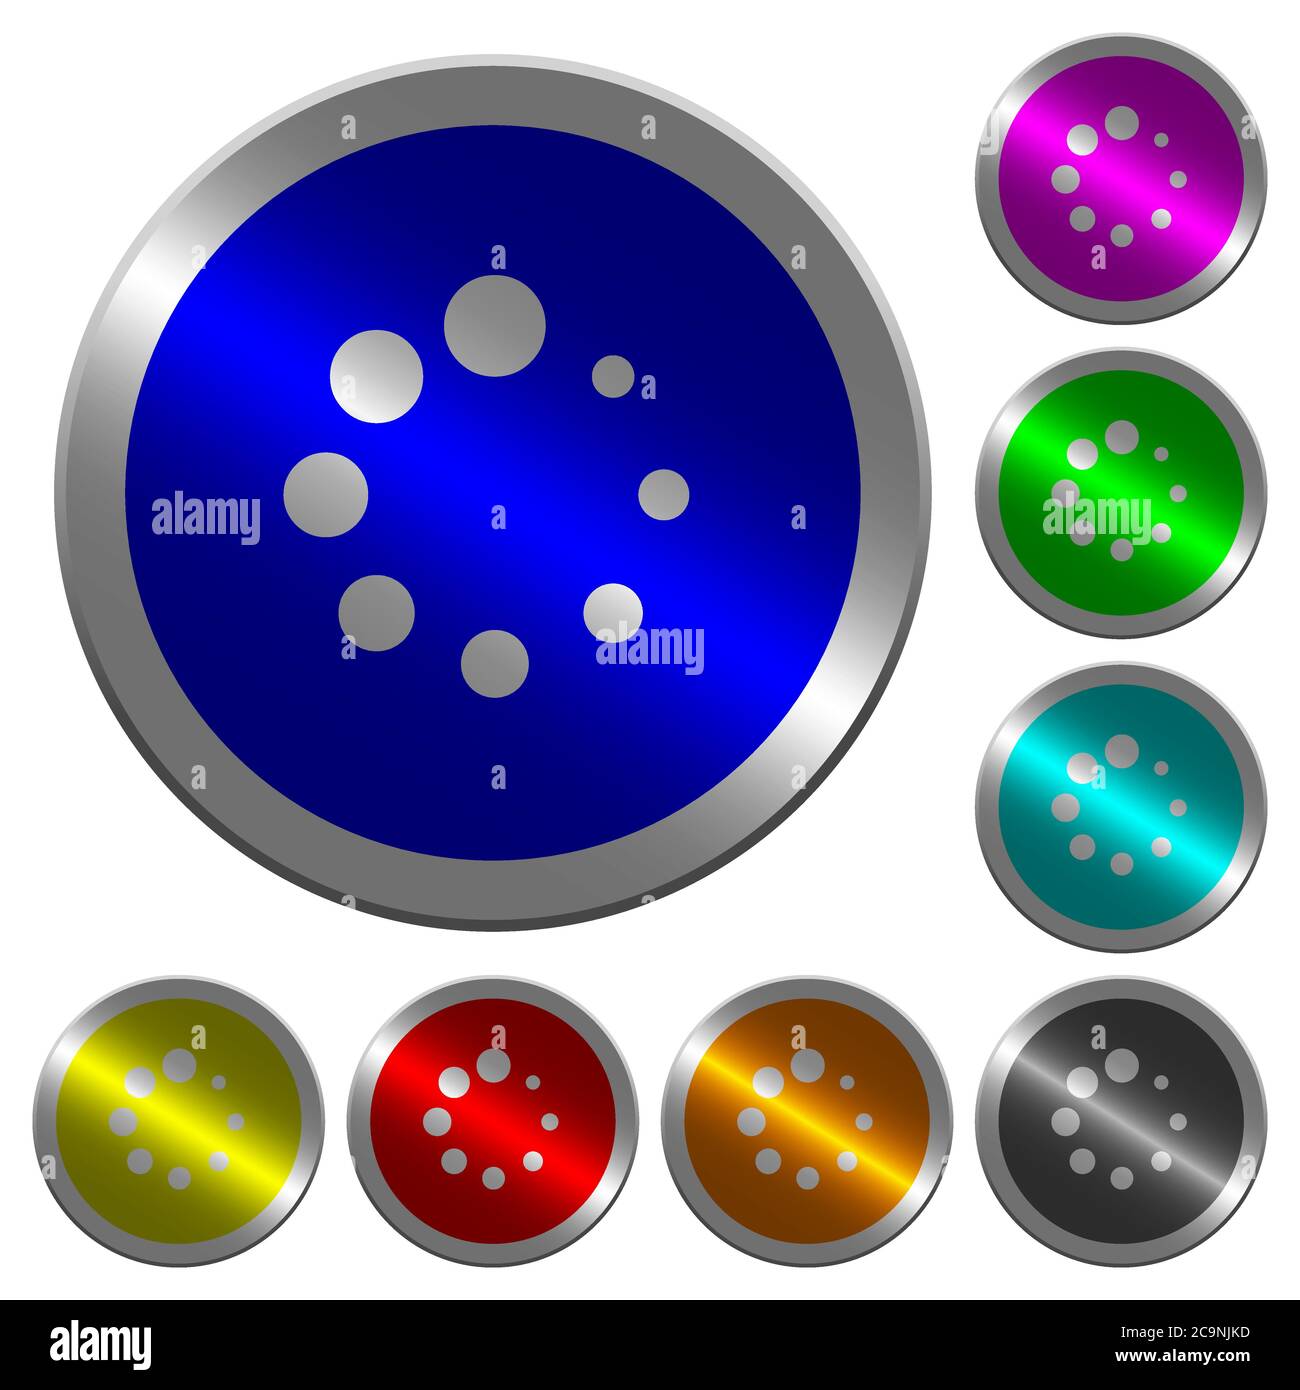 Symbole für Preloader-Symbole auf runden, fluoreszierenden farbigen Stahlknöpfen Stock Vektor